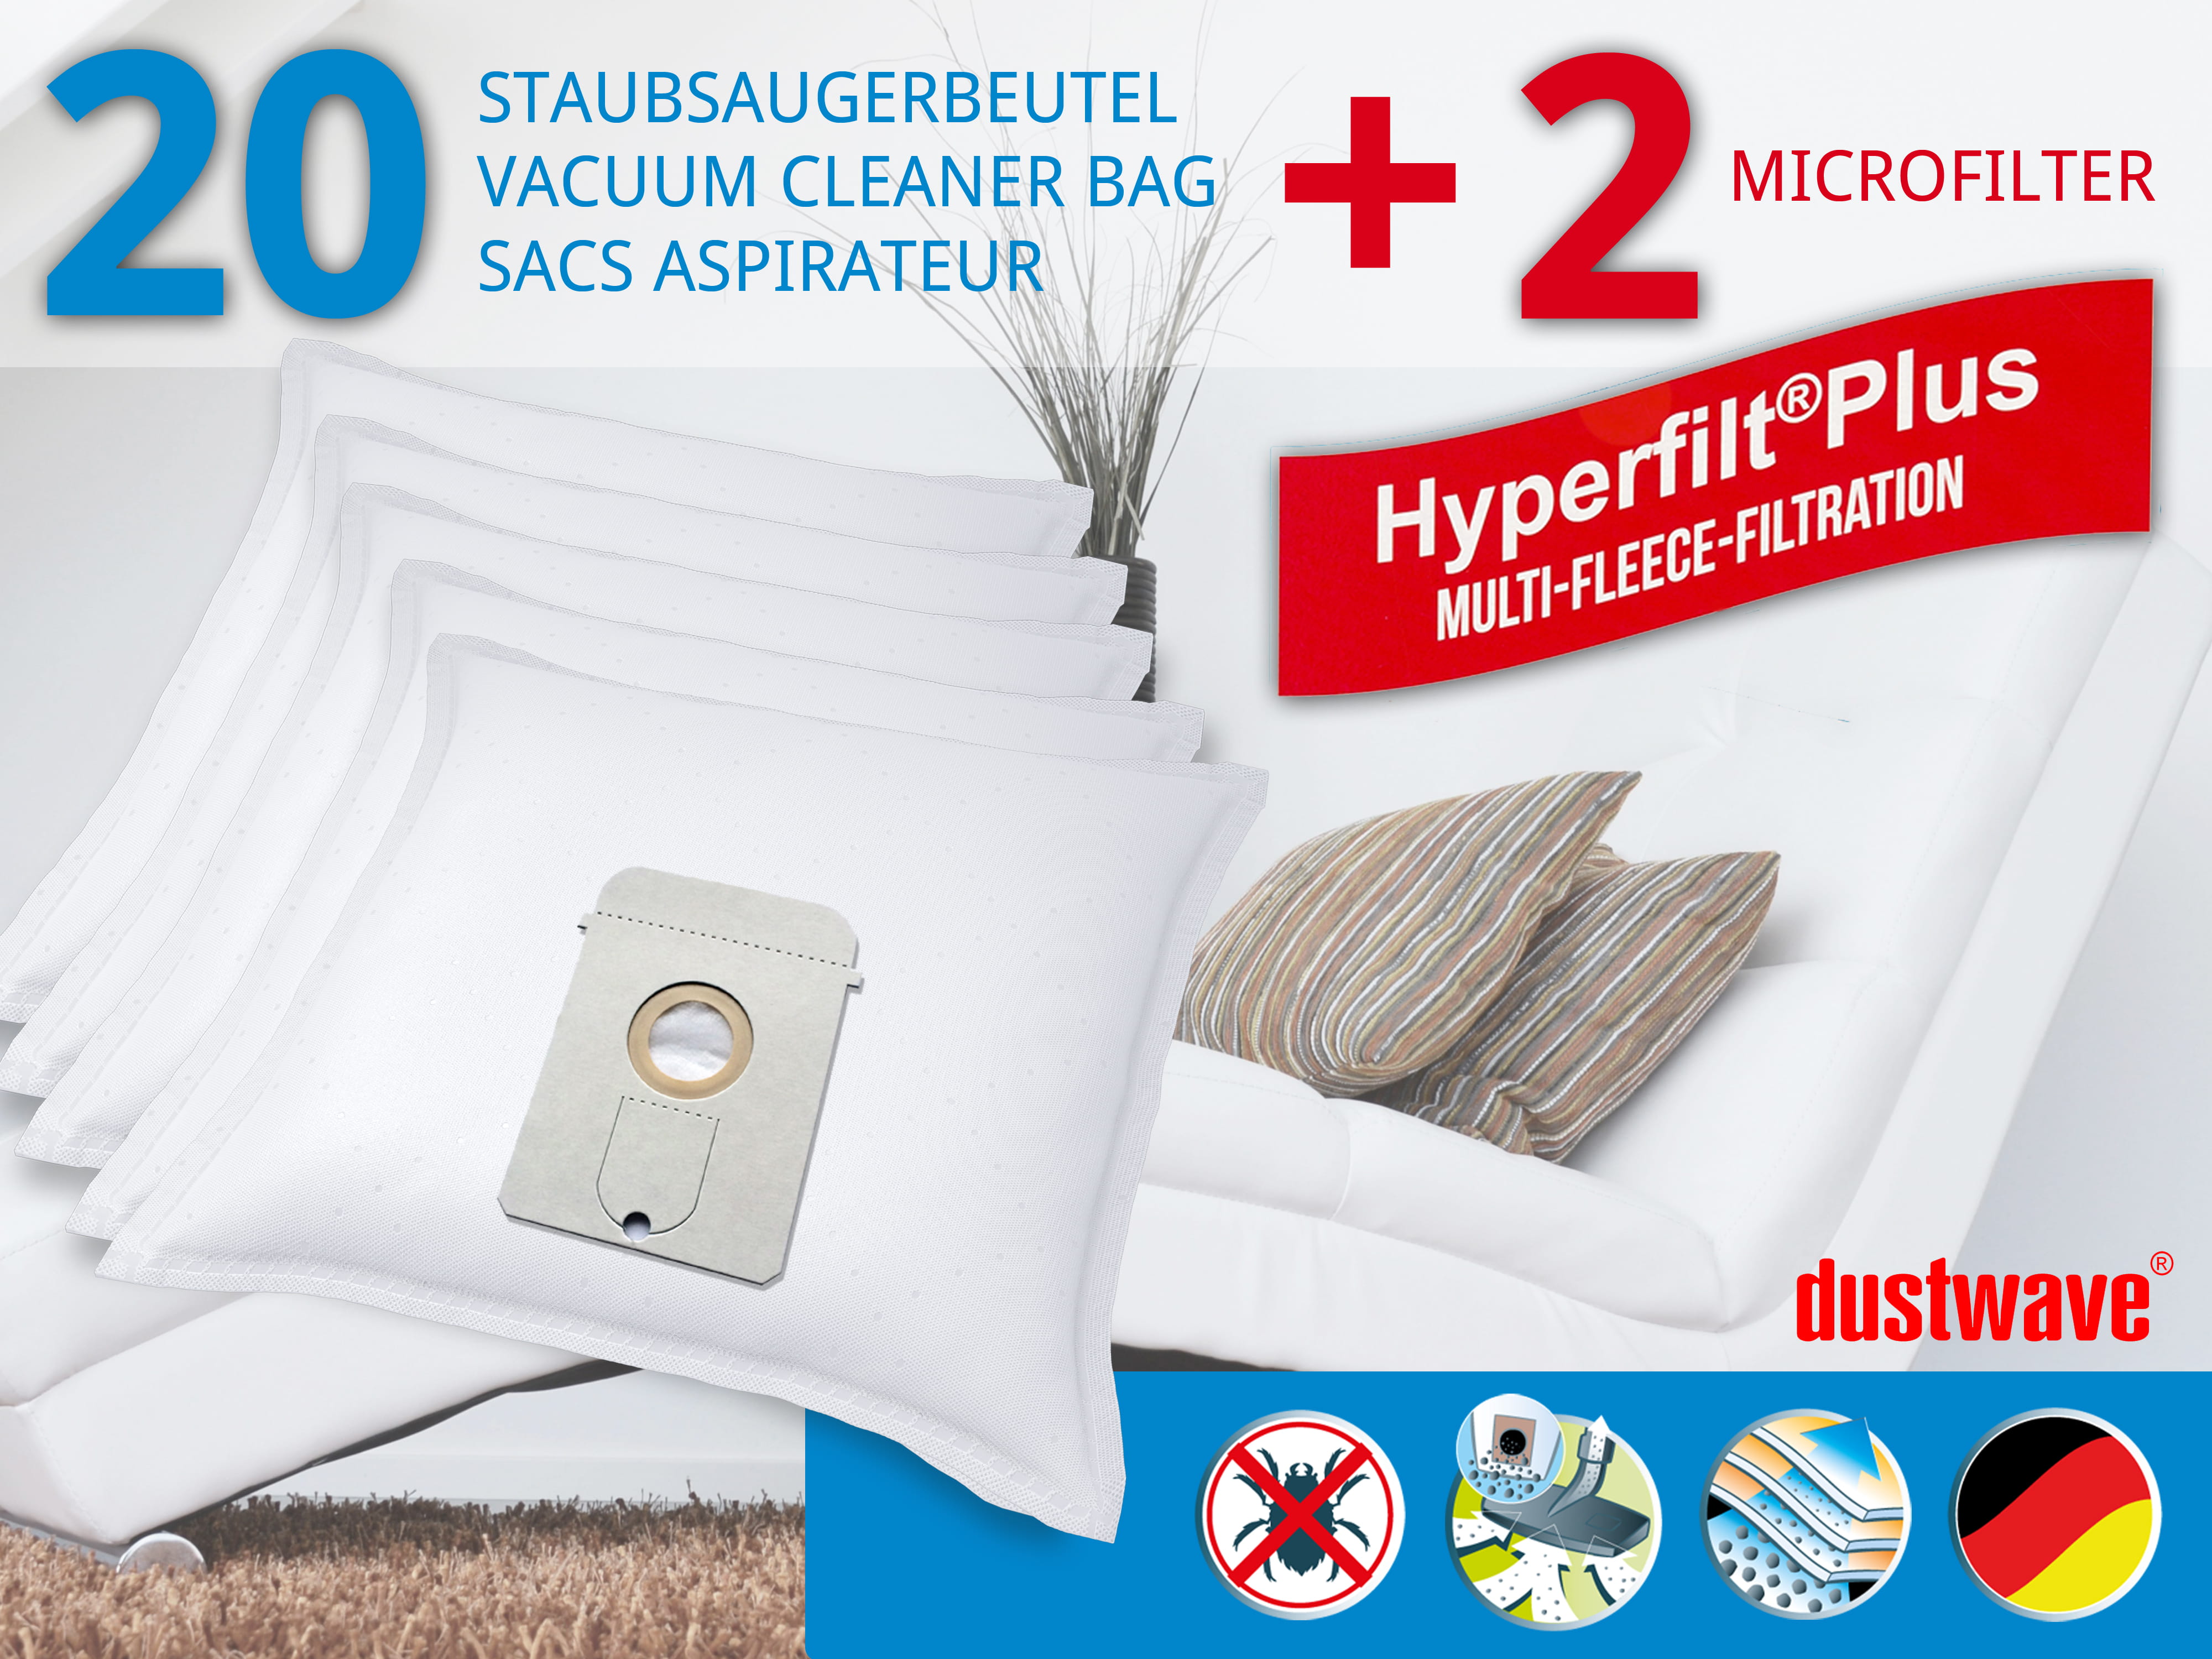 Dustwave® 20 Staubsaugerbeutel für AEG Vampyr 7208 Carat - hocheffizient, mehrlagiges Mikrovlies mit Hygieneverschluss - Made in Germany